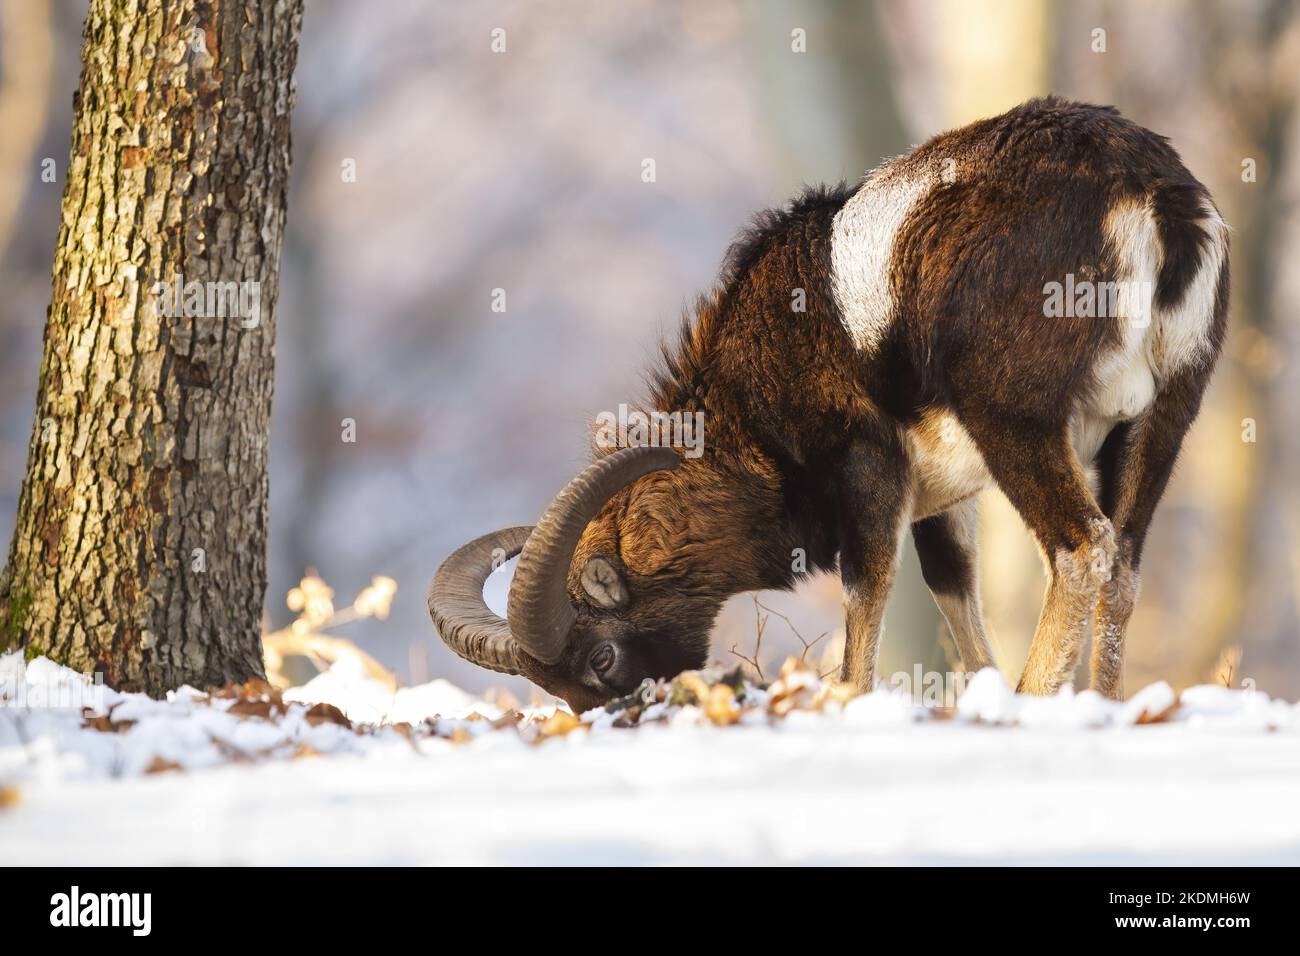 El muflón se alimenta en el bosque nevado en la naturaleza invernal Foto de stock